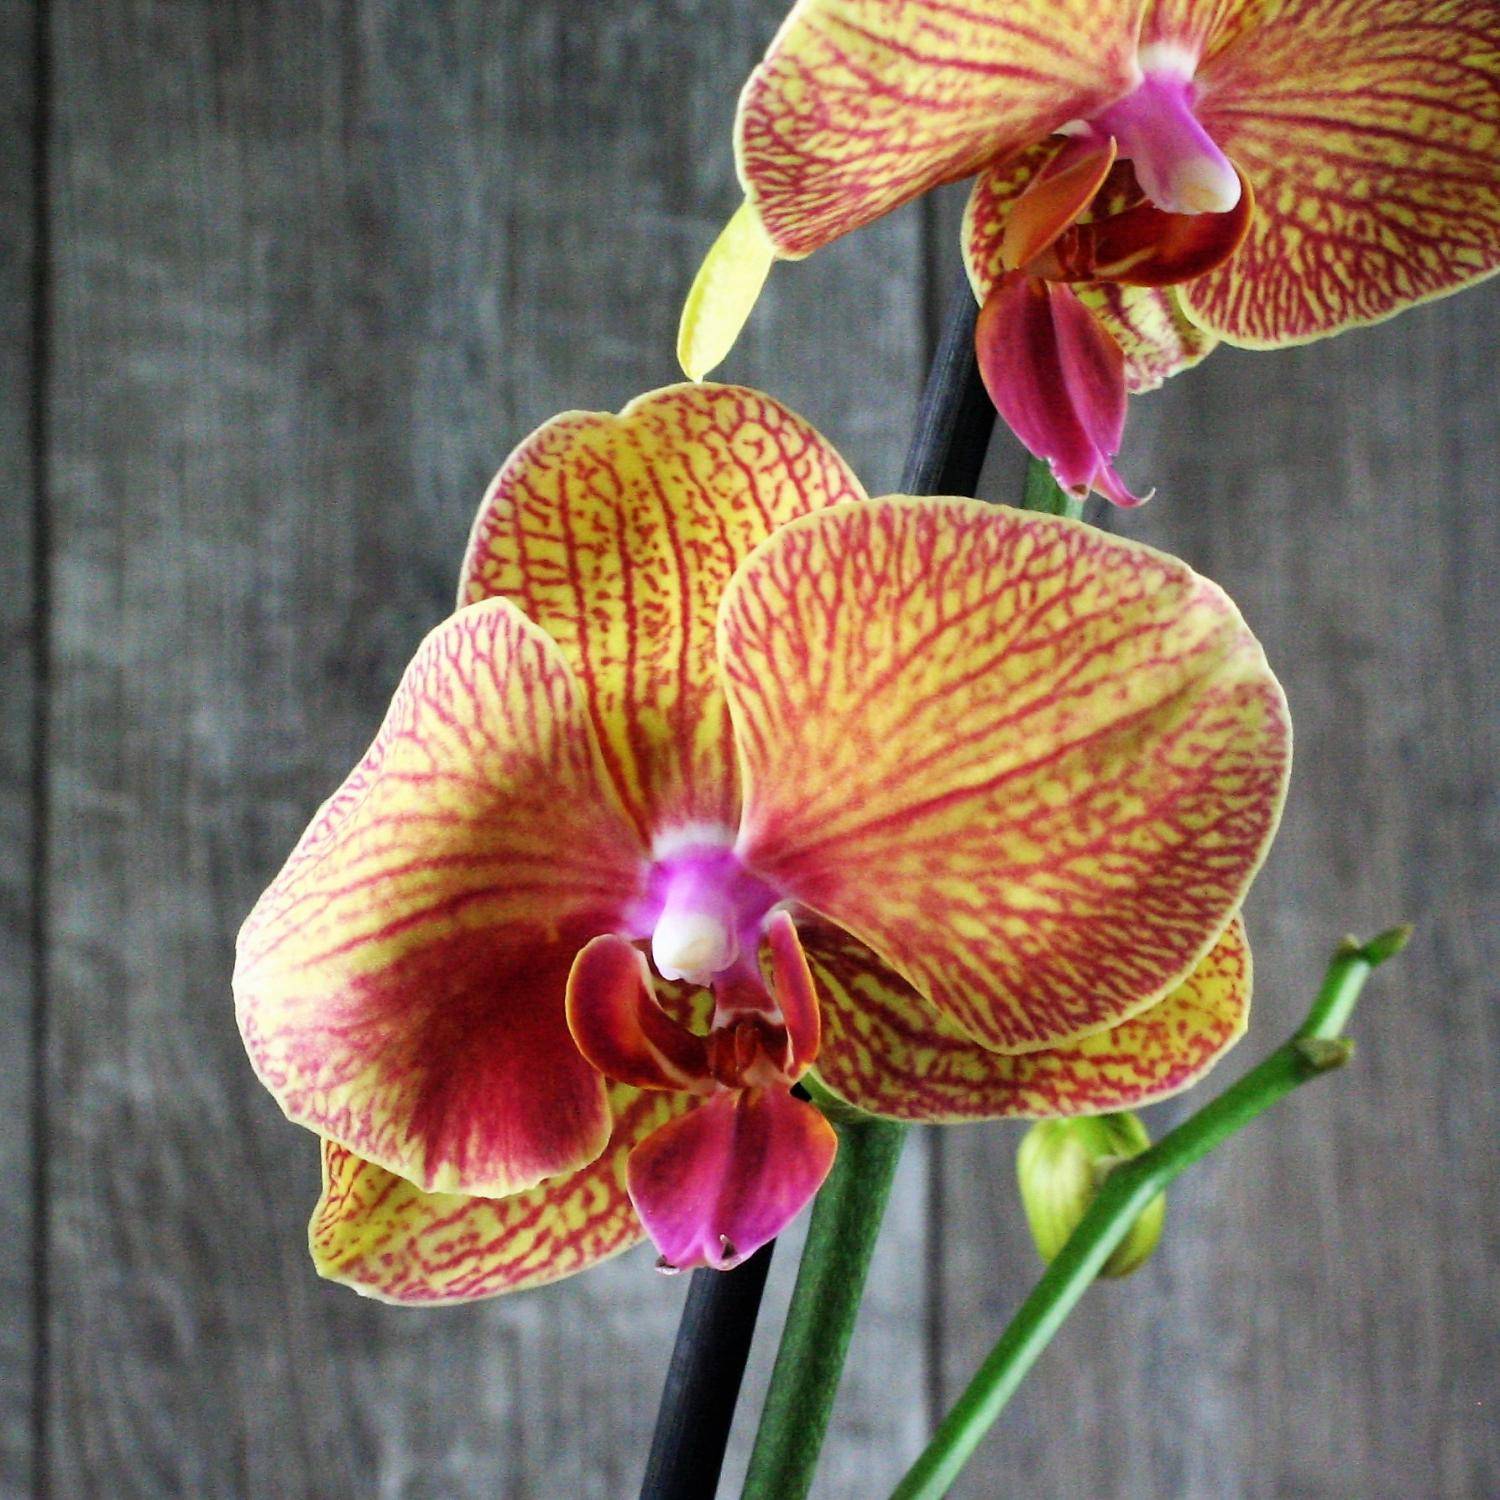 Цветок счастья - красная орхидея фаленопсис.